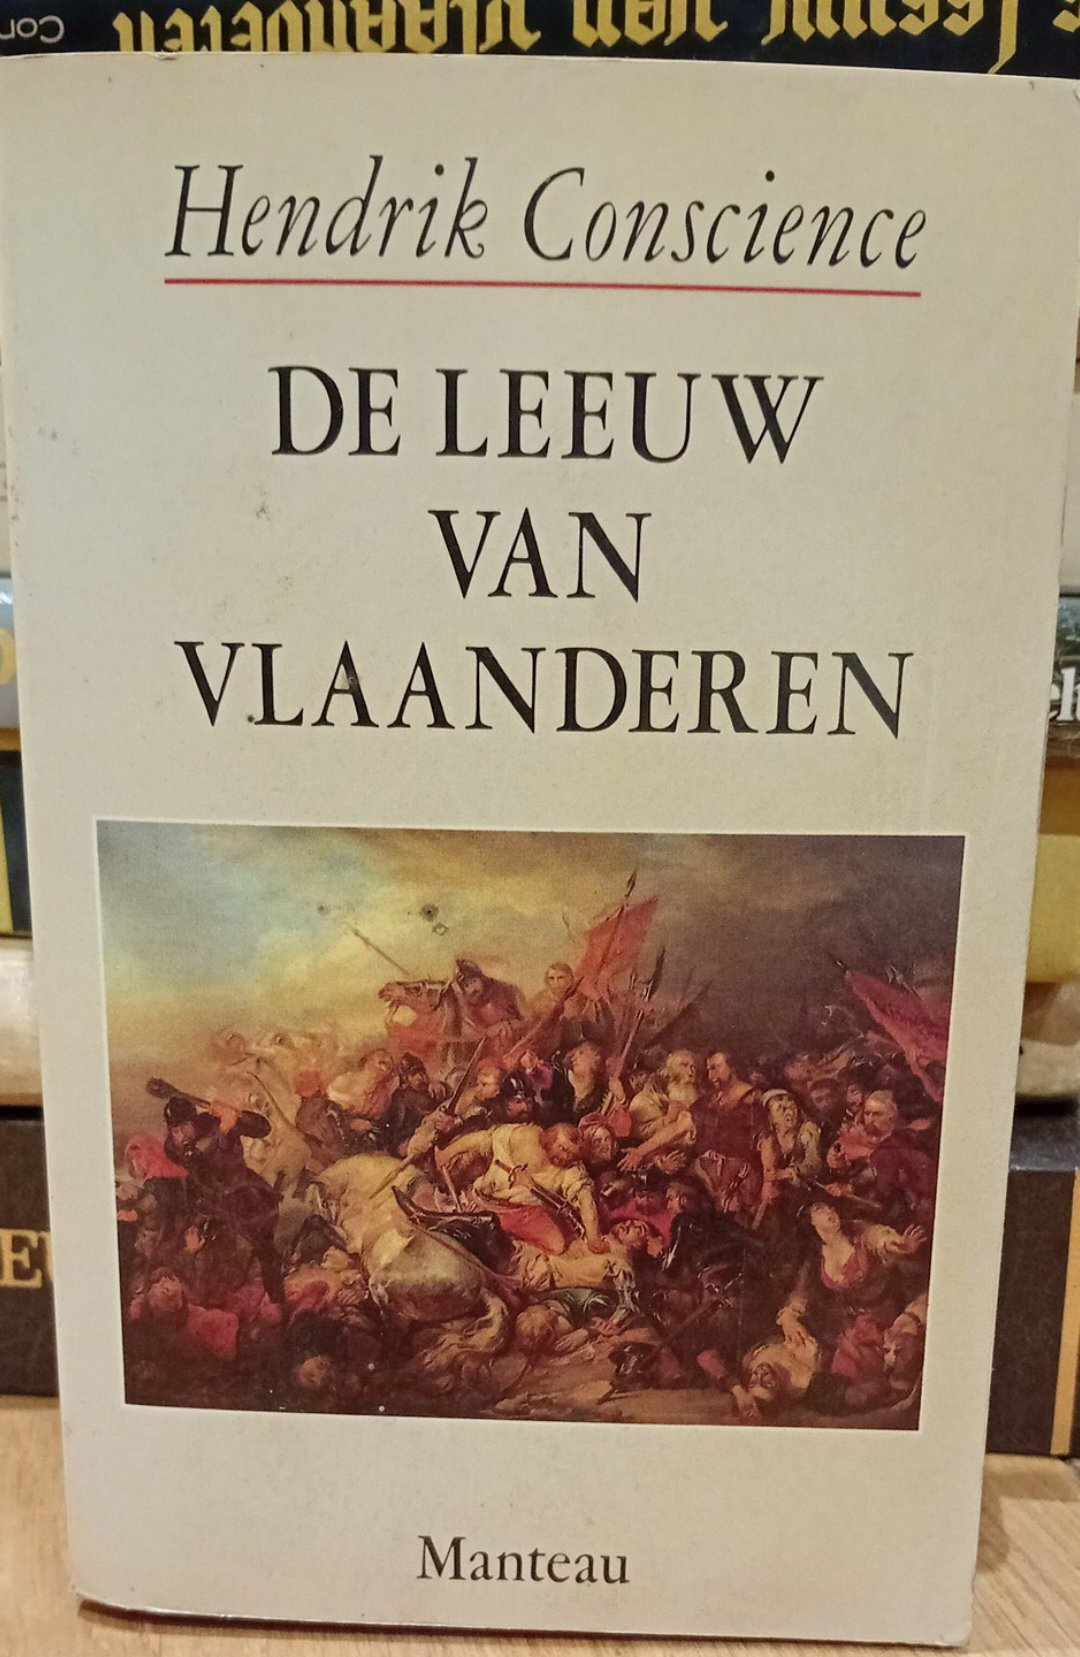 De Leeuw van Vlaanderen door Hendrik Concience - uitgave 1988